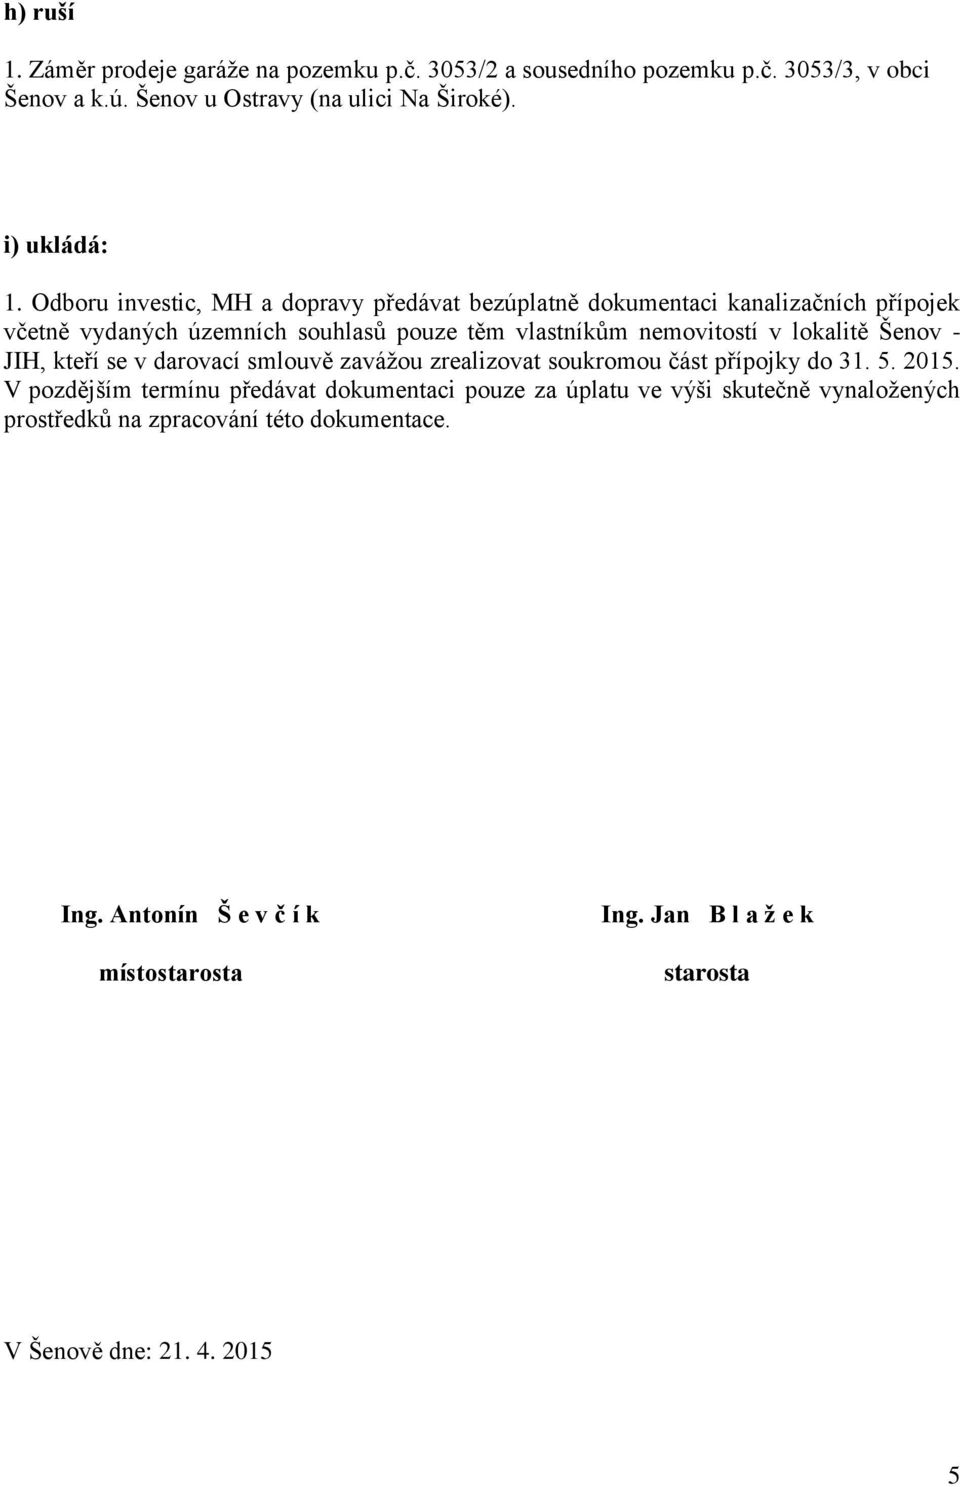 Šenov - JIH, kteří se v darovací smlouvě zavážou zrealizovat soukromou část přípojky do 31. 5. 2015.